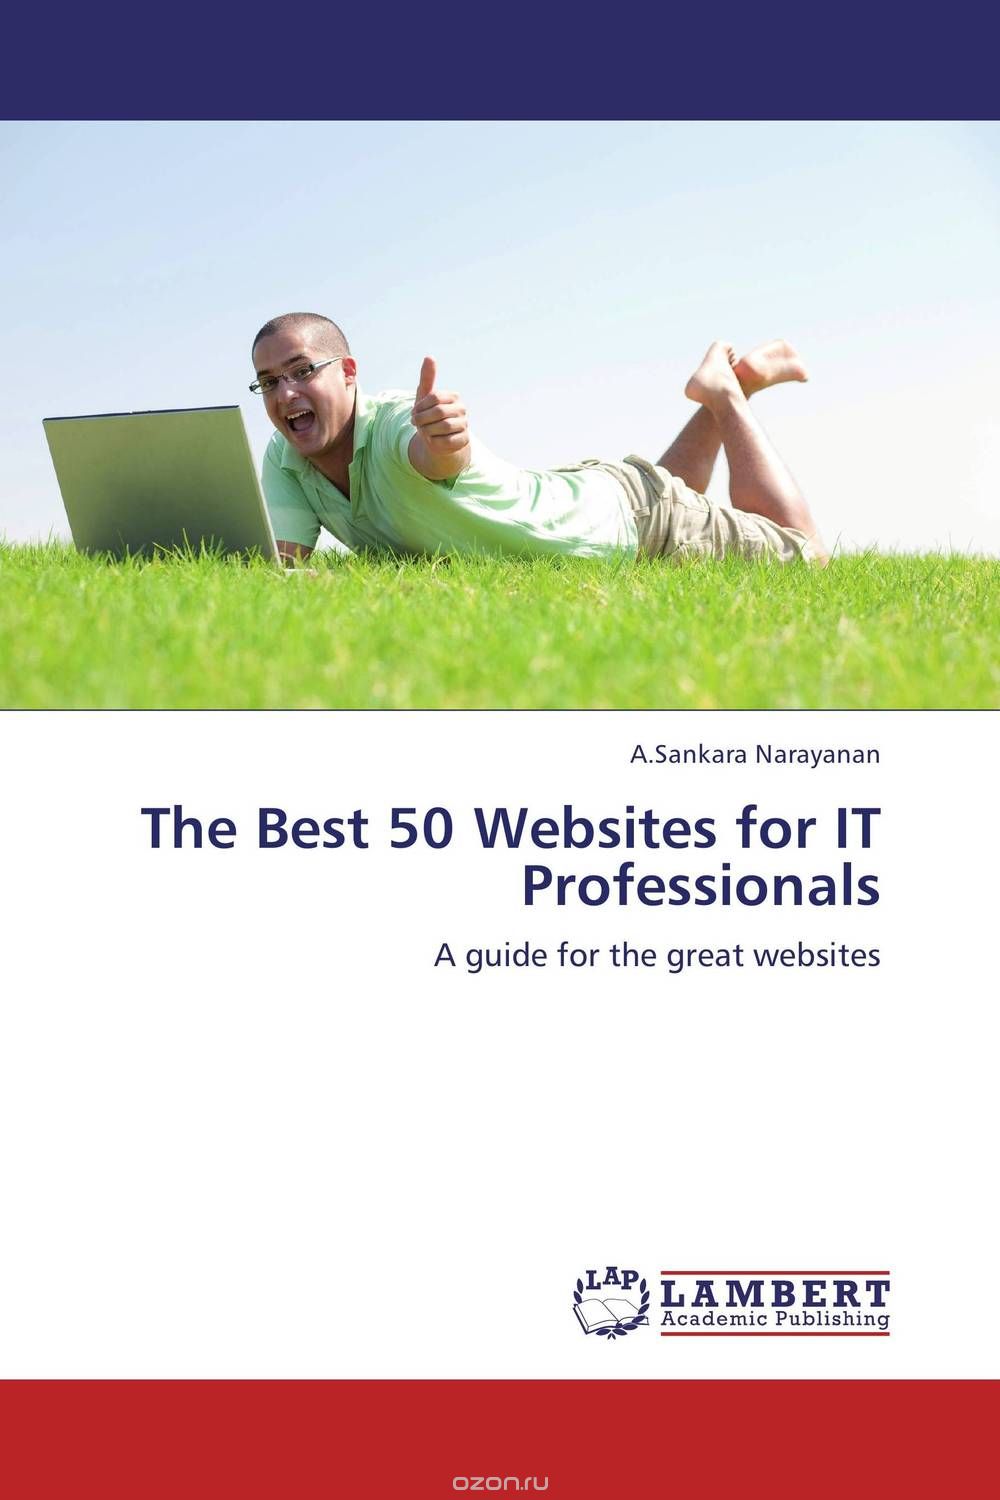 Скачать книгу "The Best 50 Websites for IT Professionals"